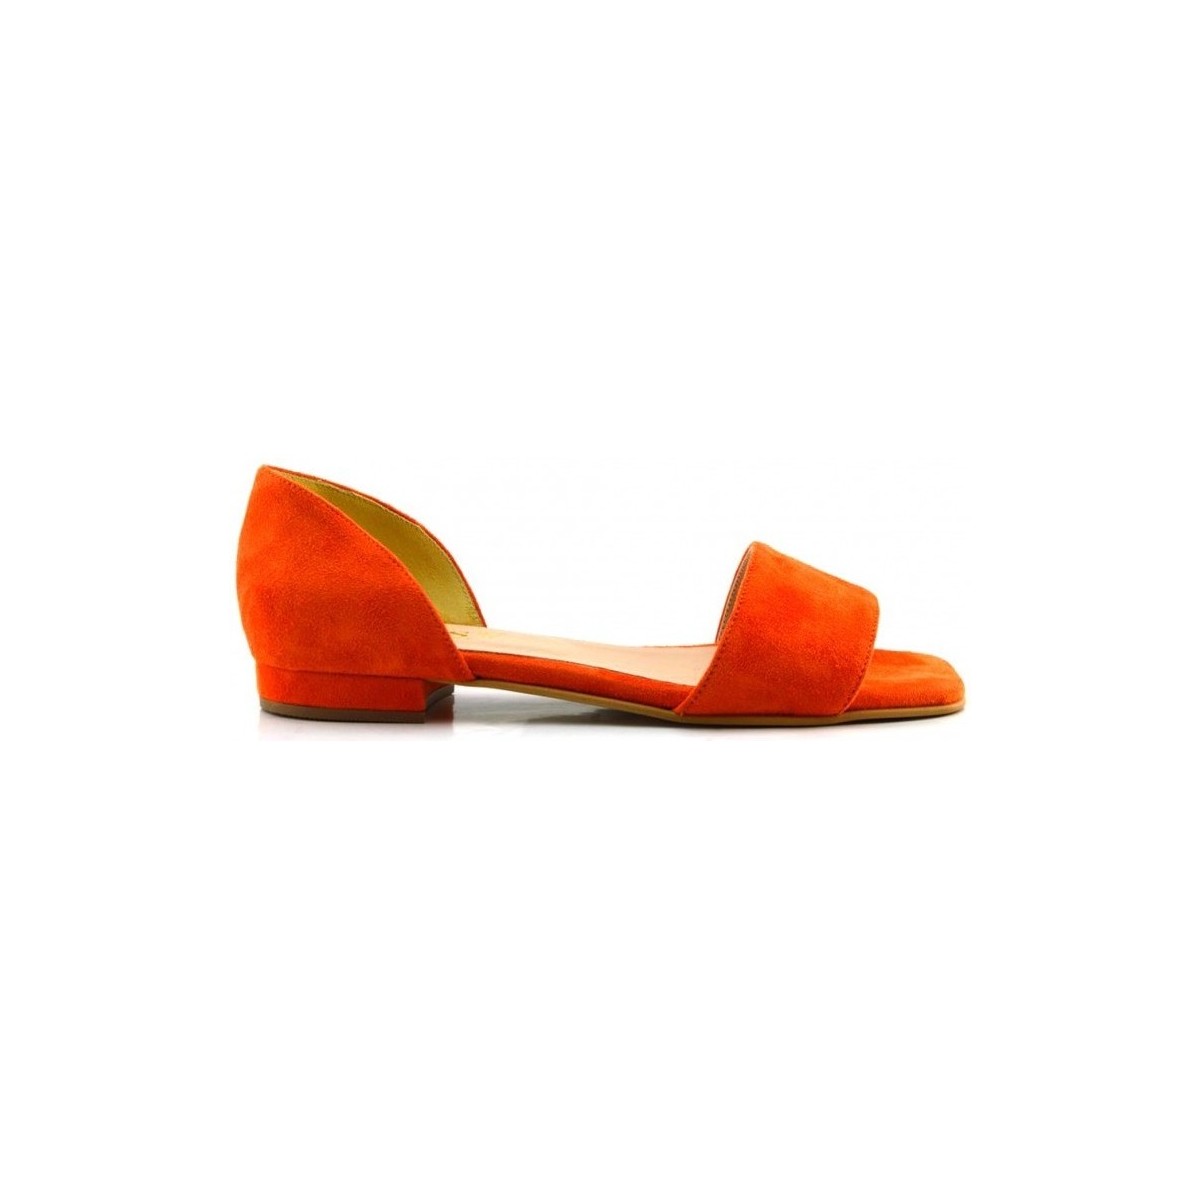 Chaussures Femme Ballerines / babies Lussy Fiore 8056 arancio Orange